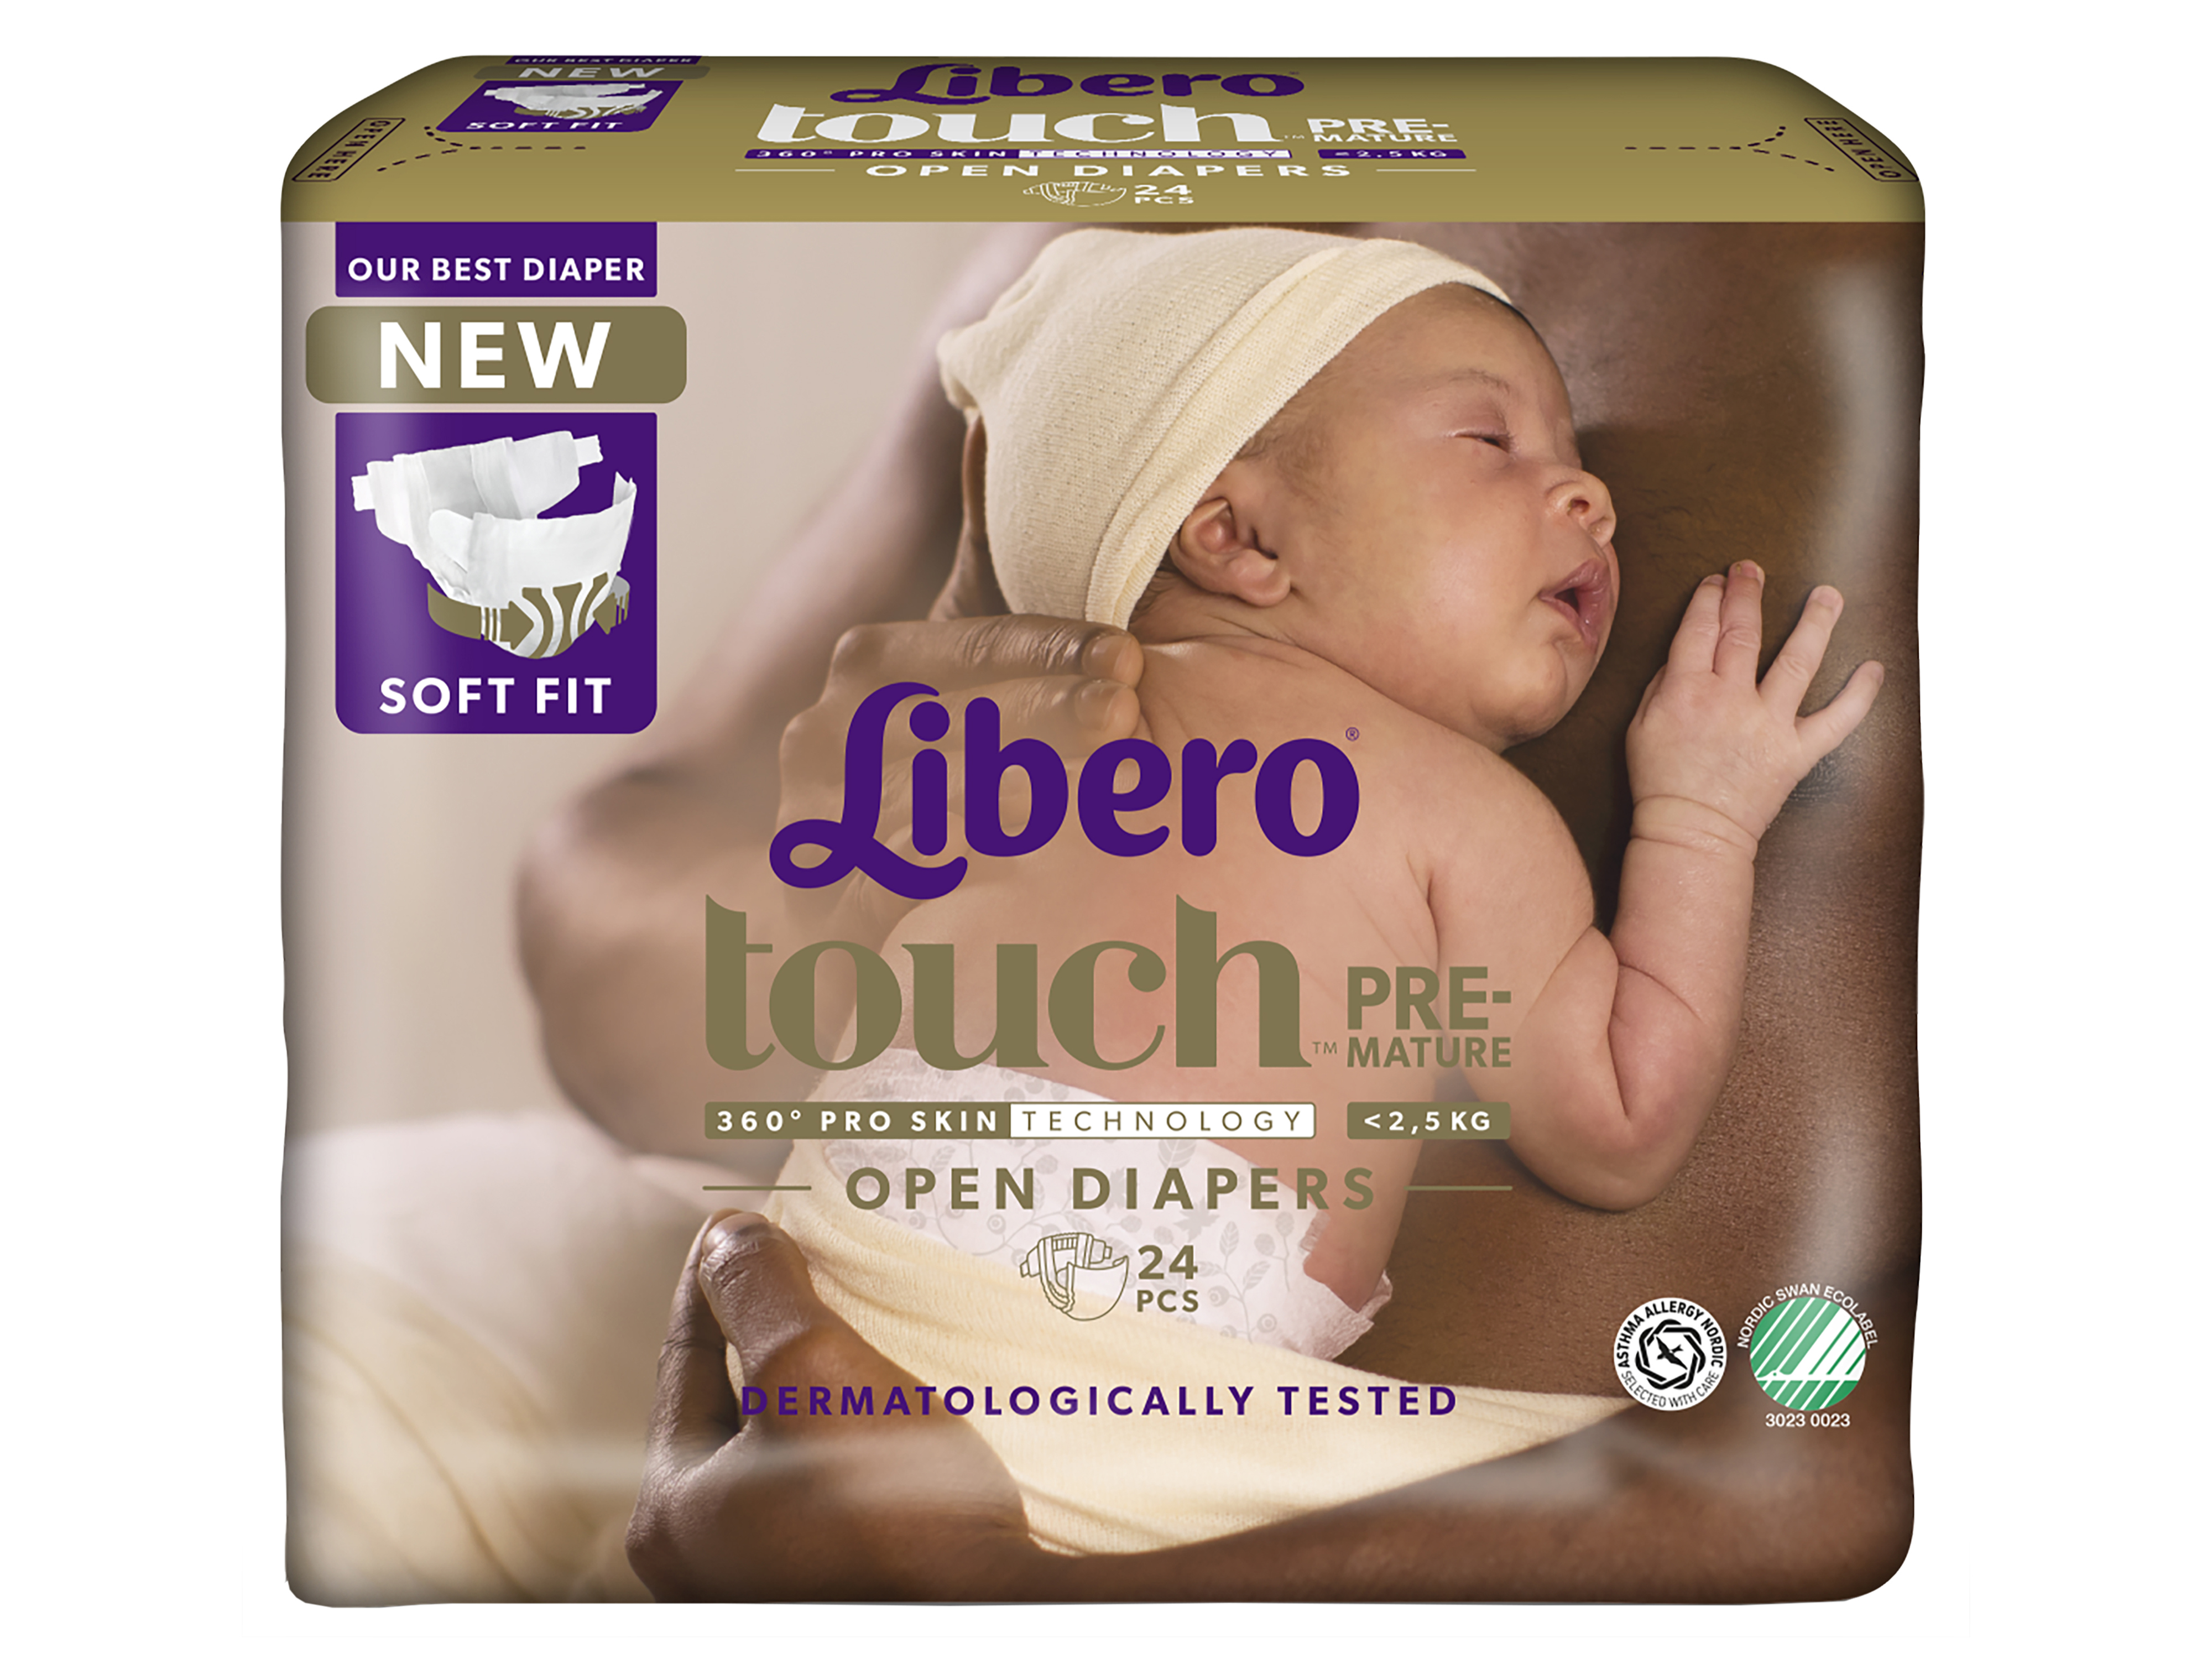 Libero Touch Premature, Åpne Bleier, <2,5 kg, 24 stk.